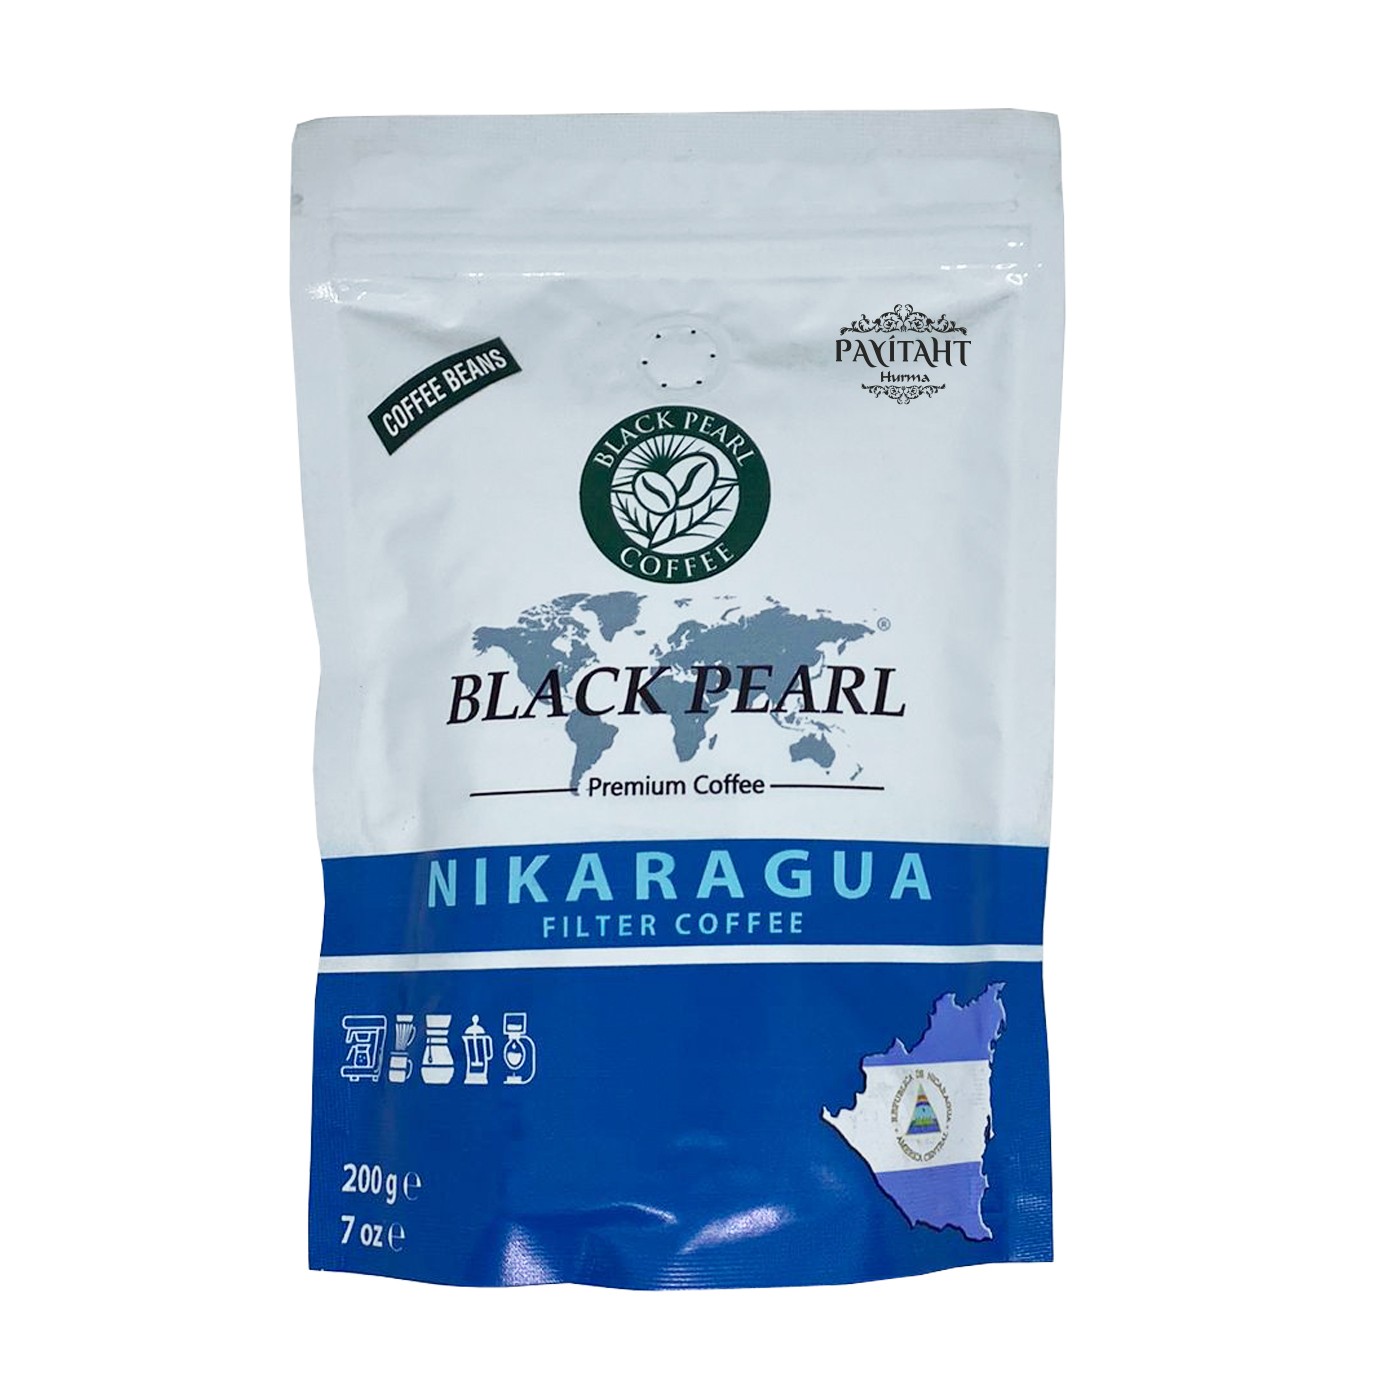 BLACK PEARL-NICARAGUAN FILTER COFFEE 200 GR